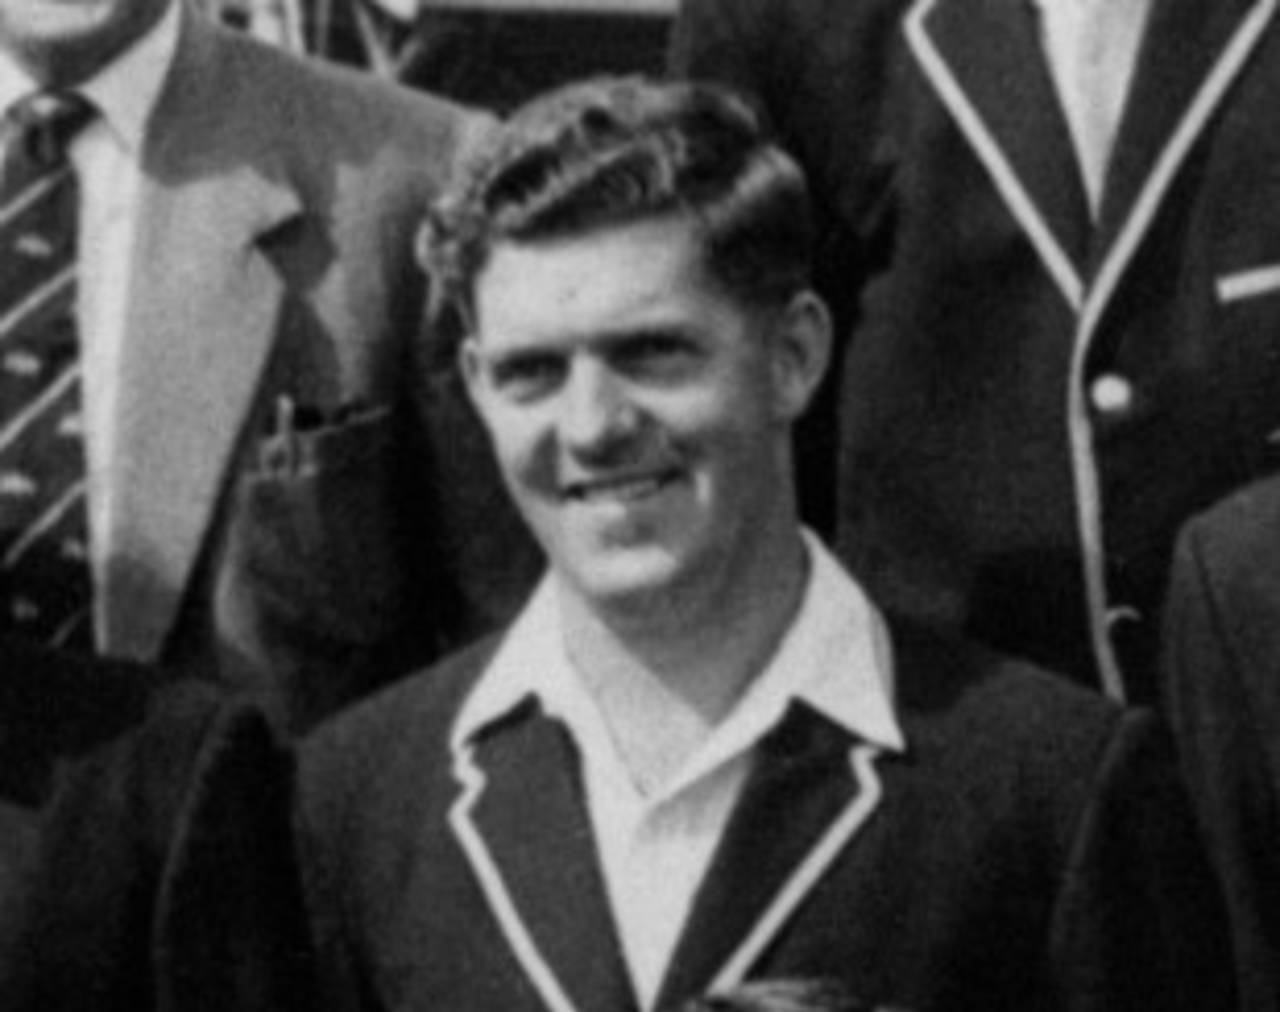 Ron Gaunt played three Tests for Australia&nbsp;&nbsp;&bull;&nbsp;&nbsp;PA Photos